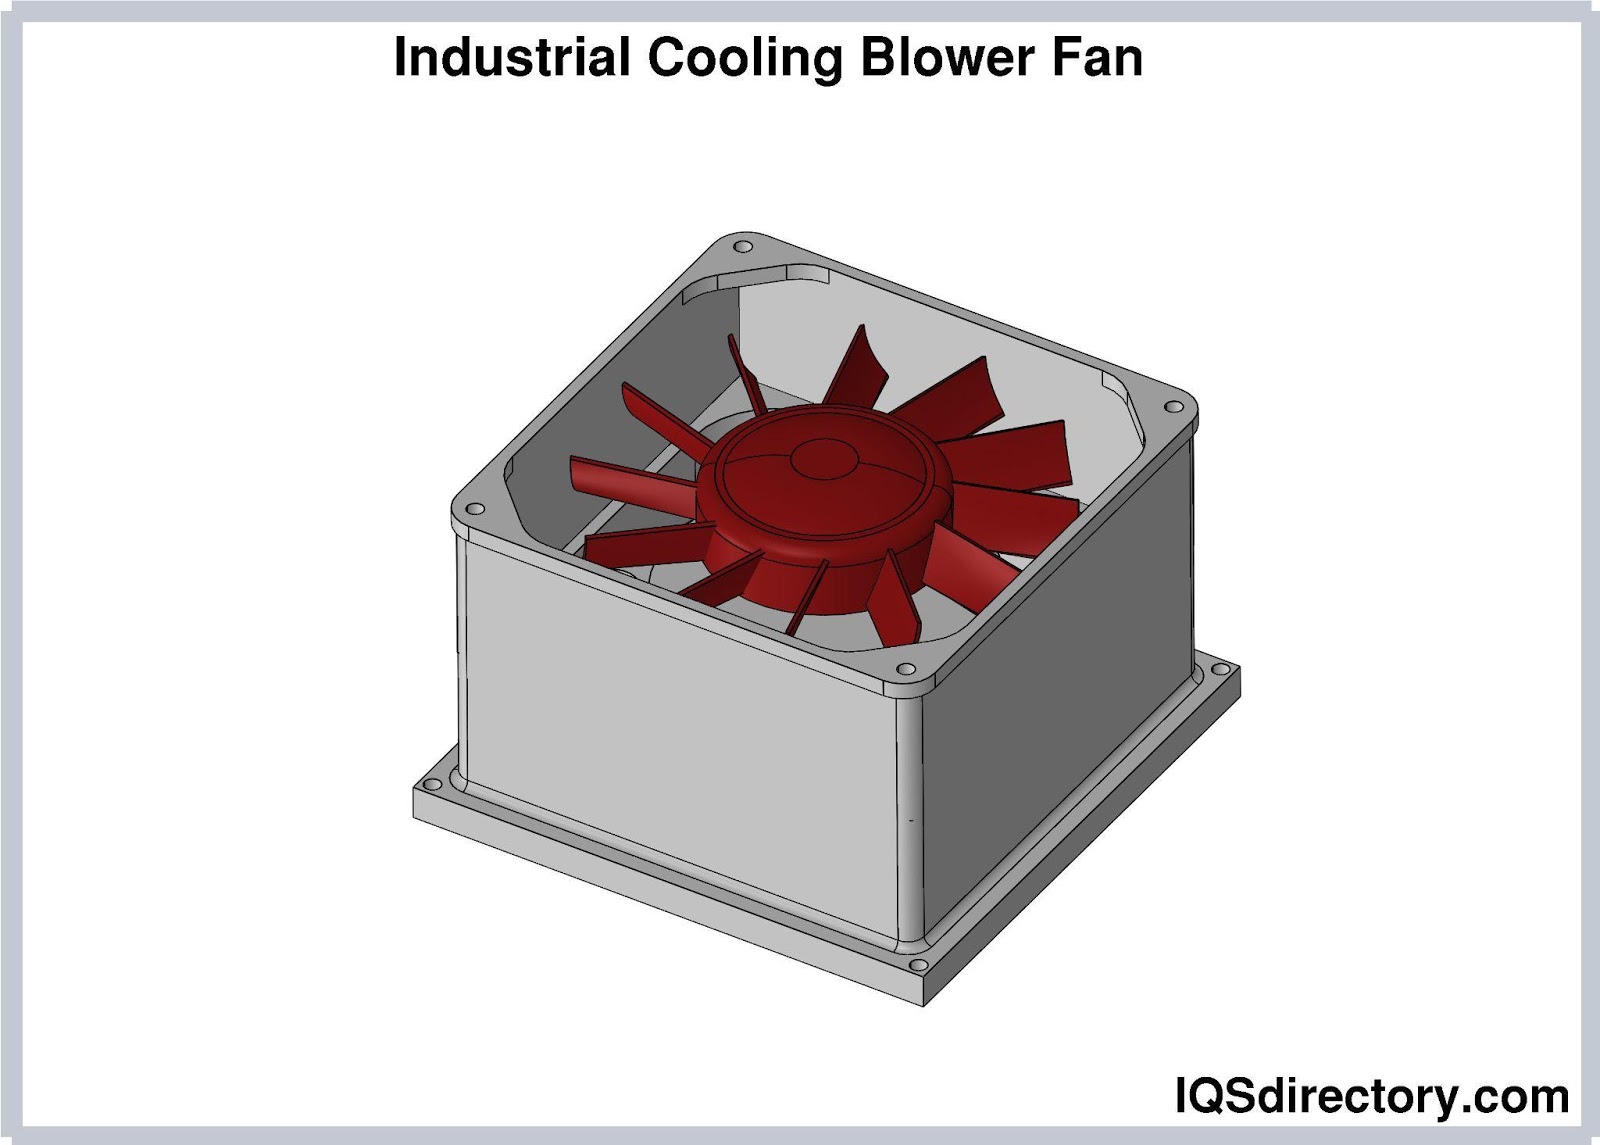 Industrial Cooling Blower Fan